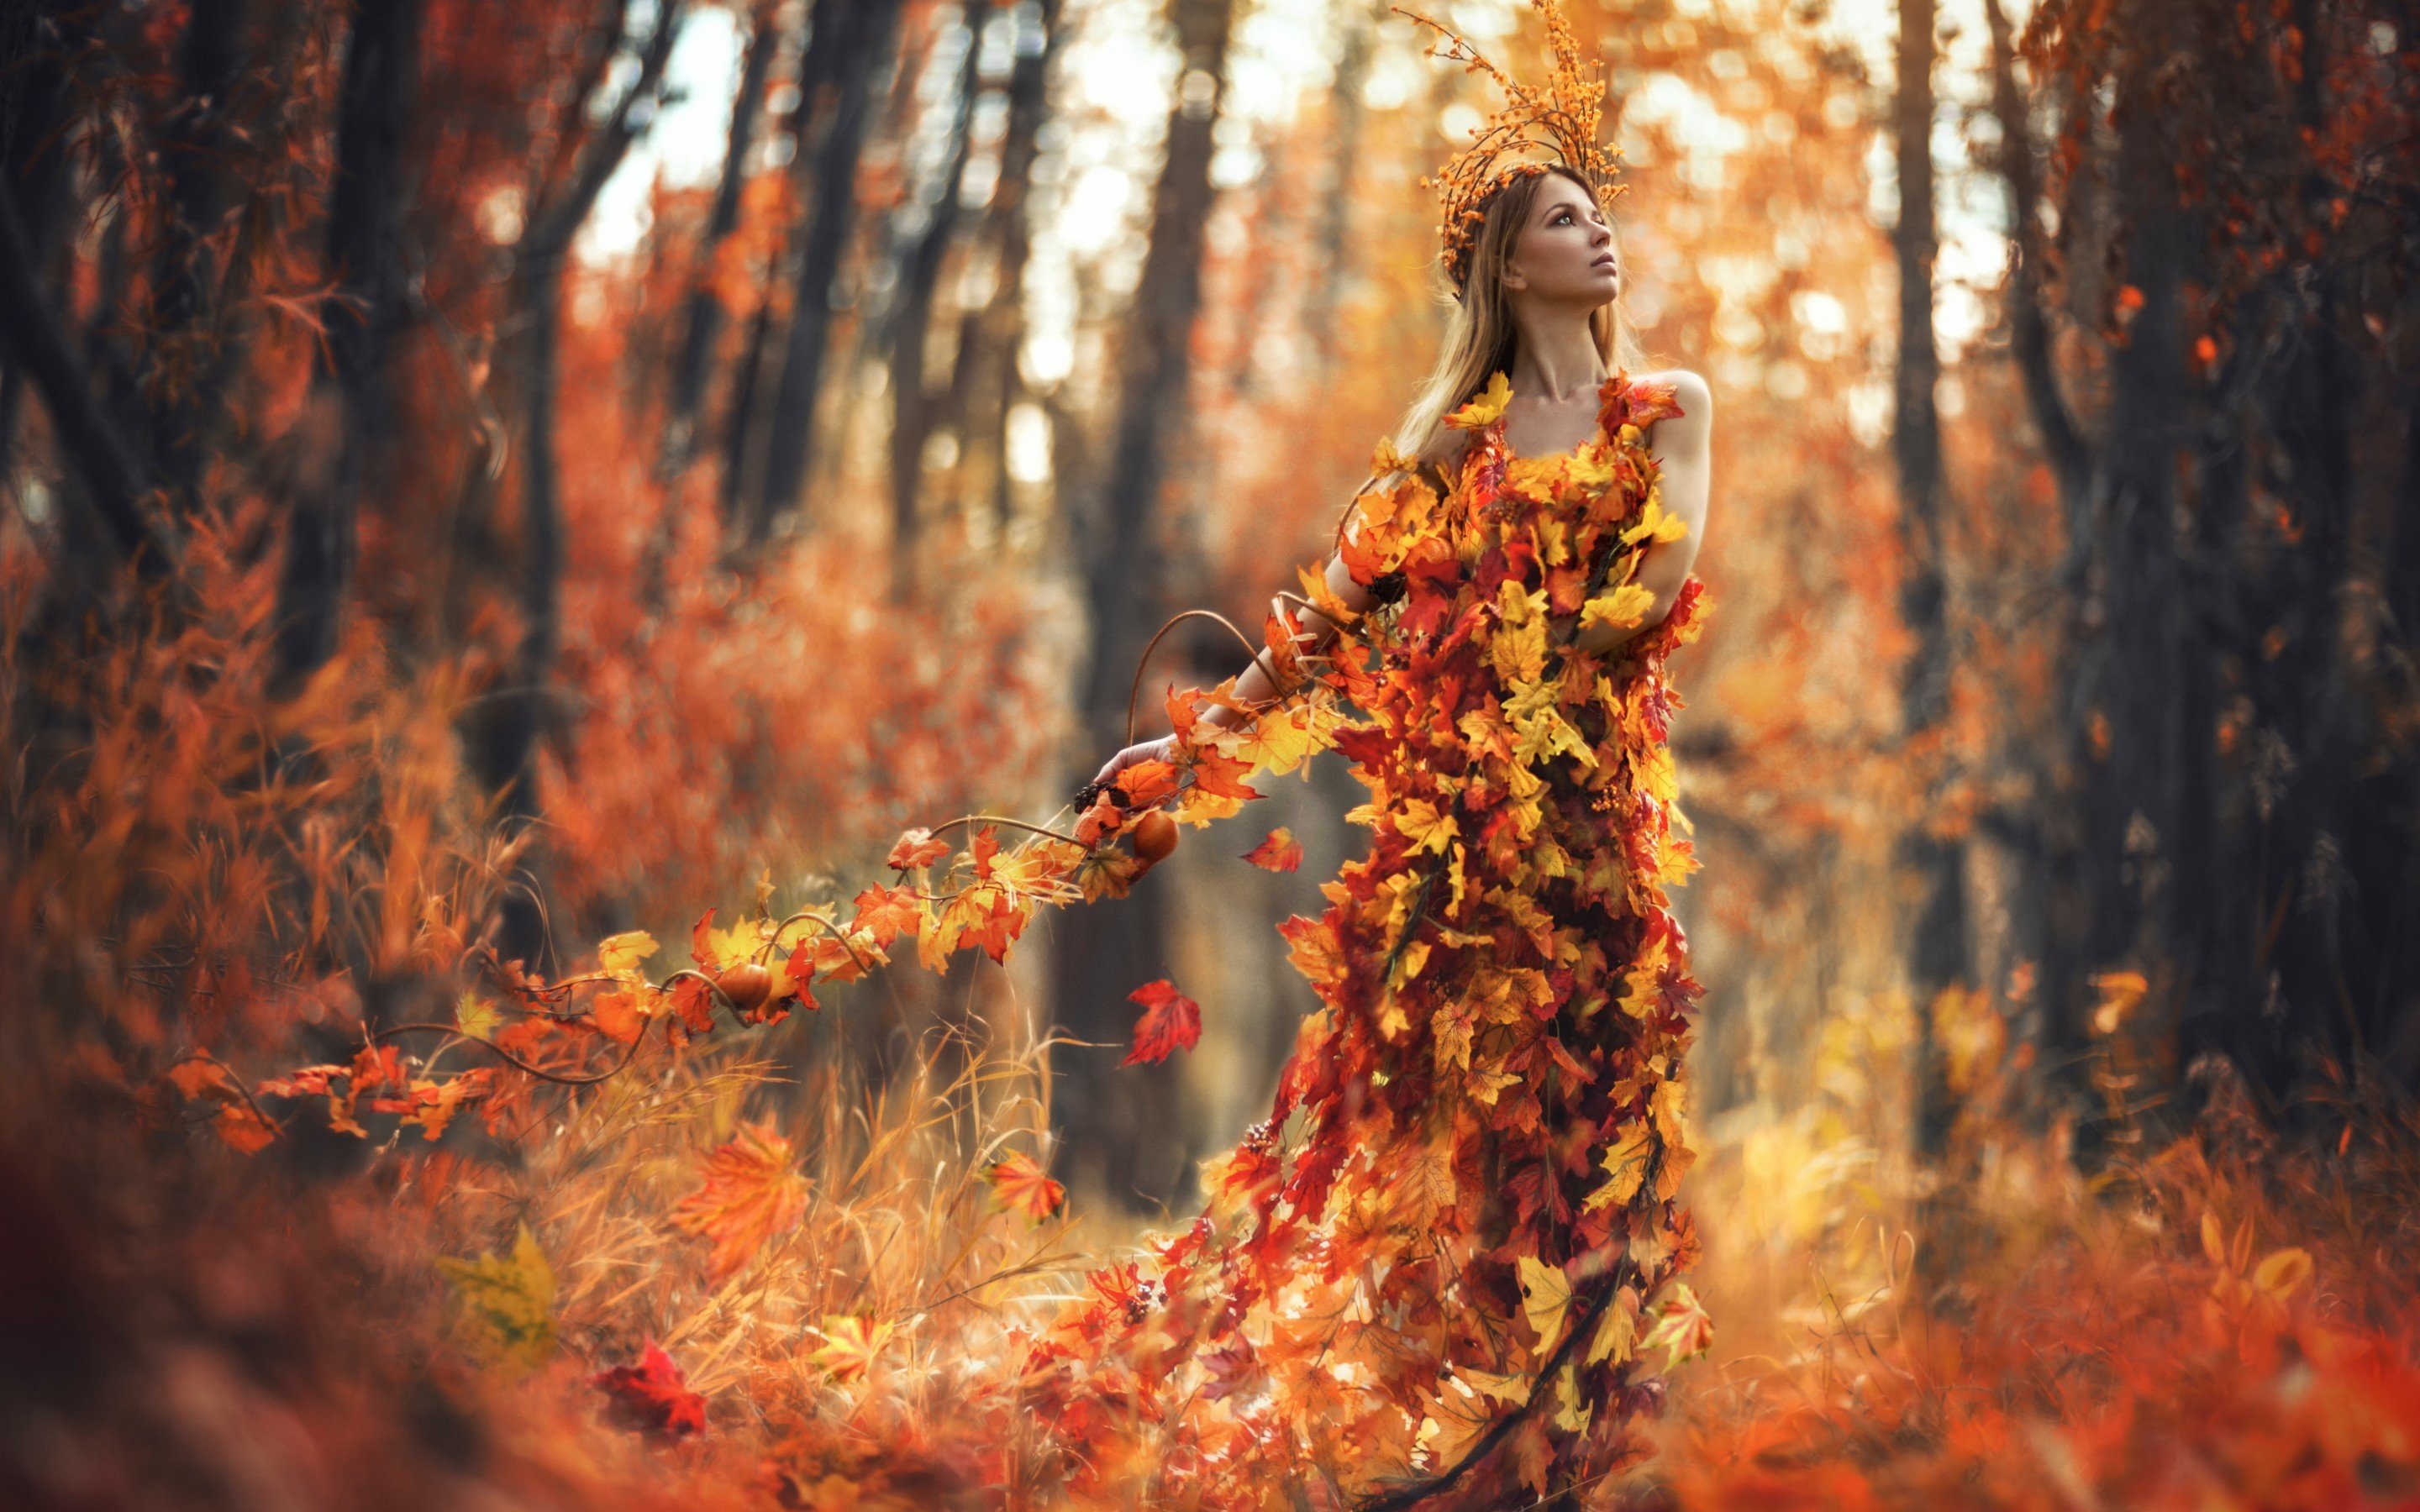 kadın wallpaper,tree,natural environment,leaf,autumn,forest